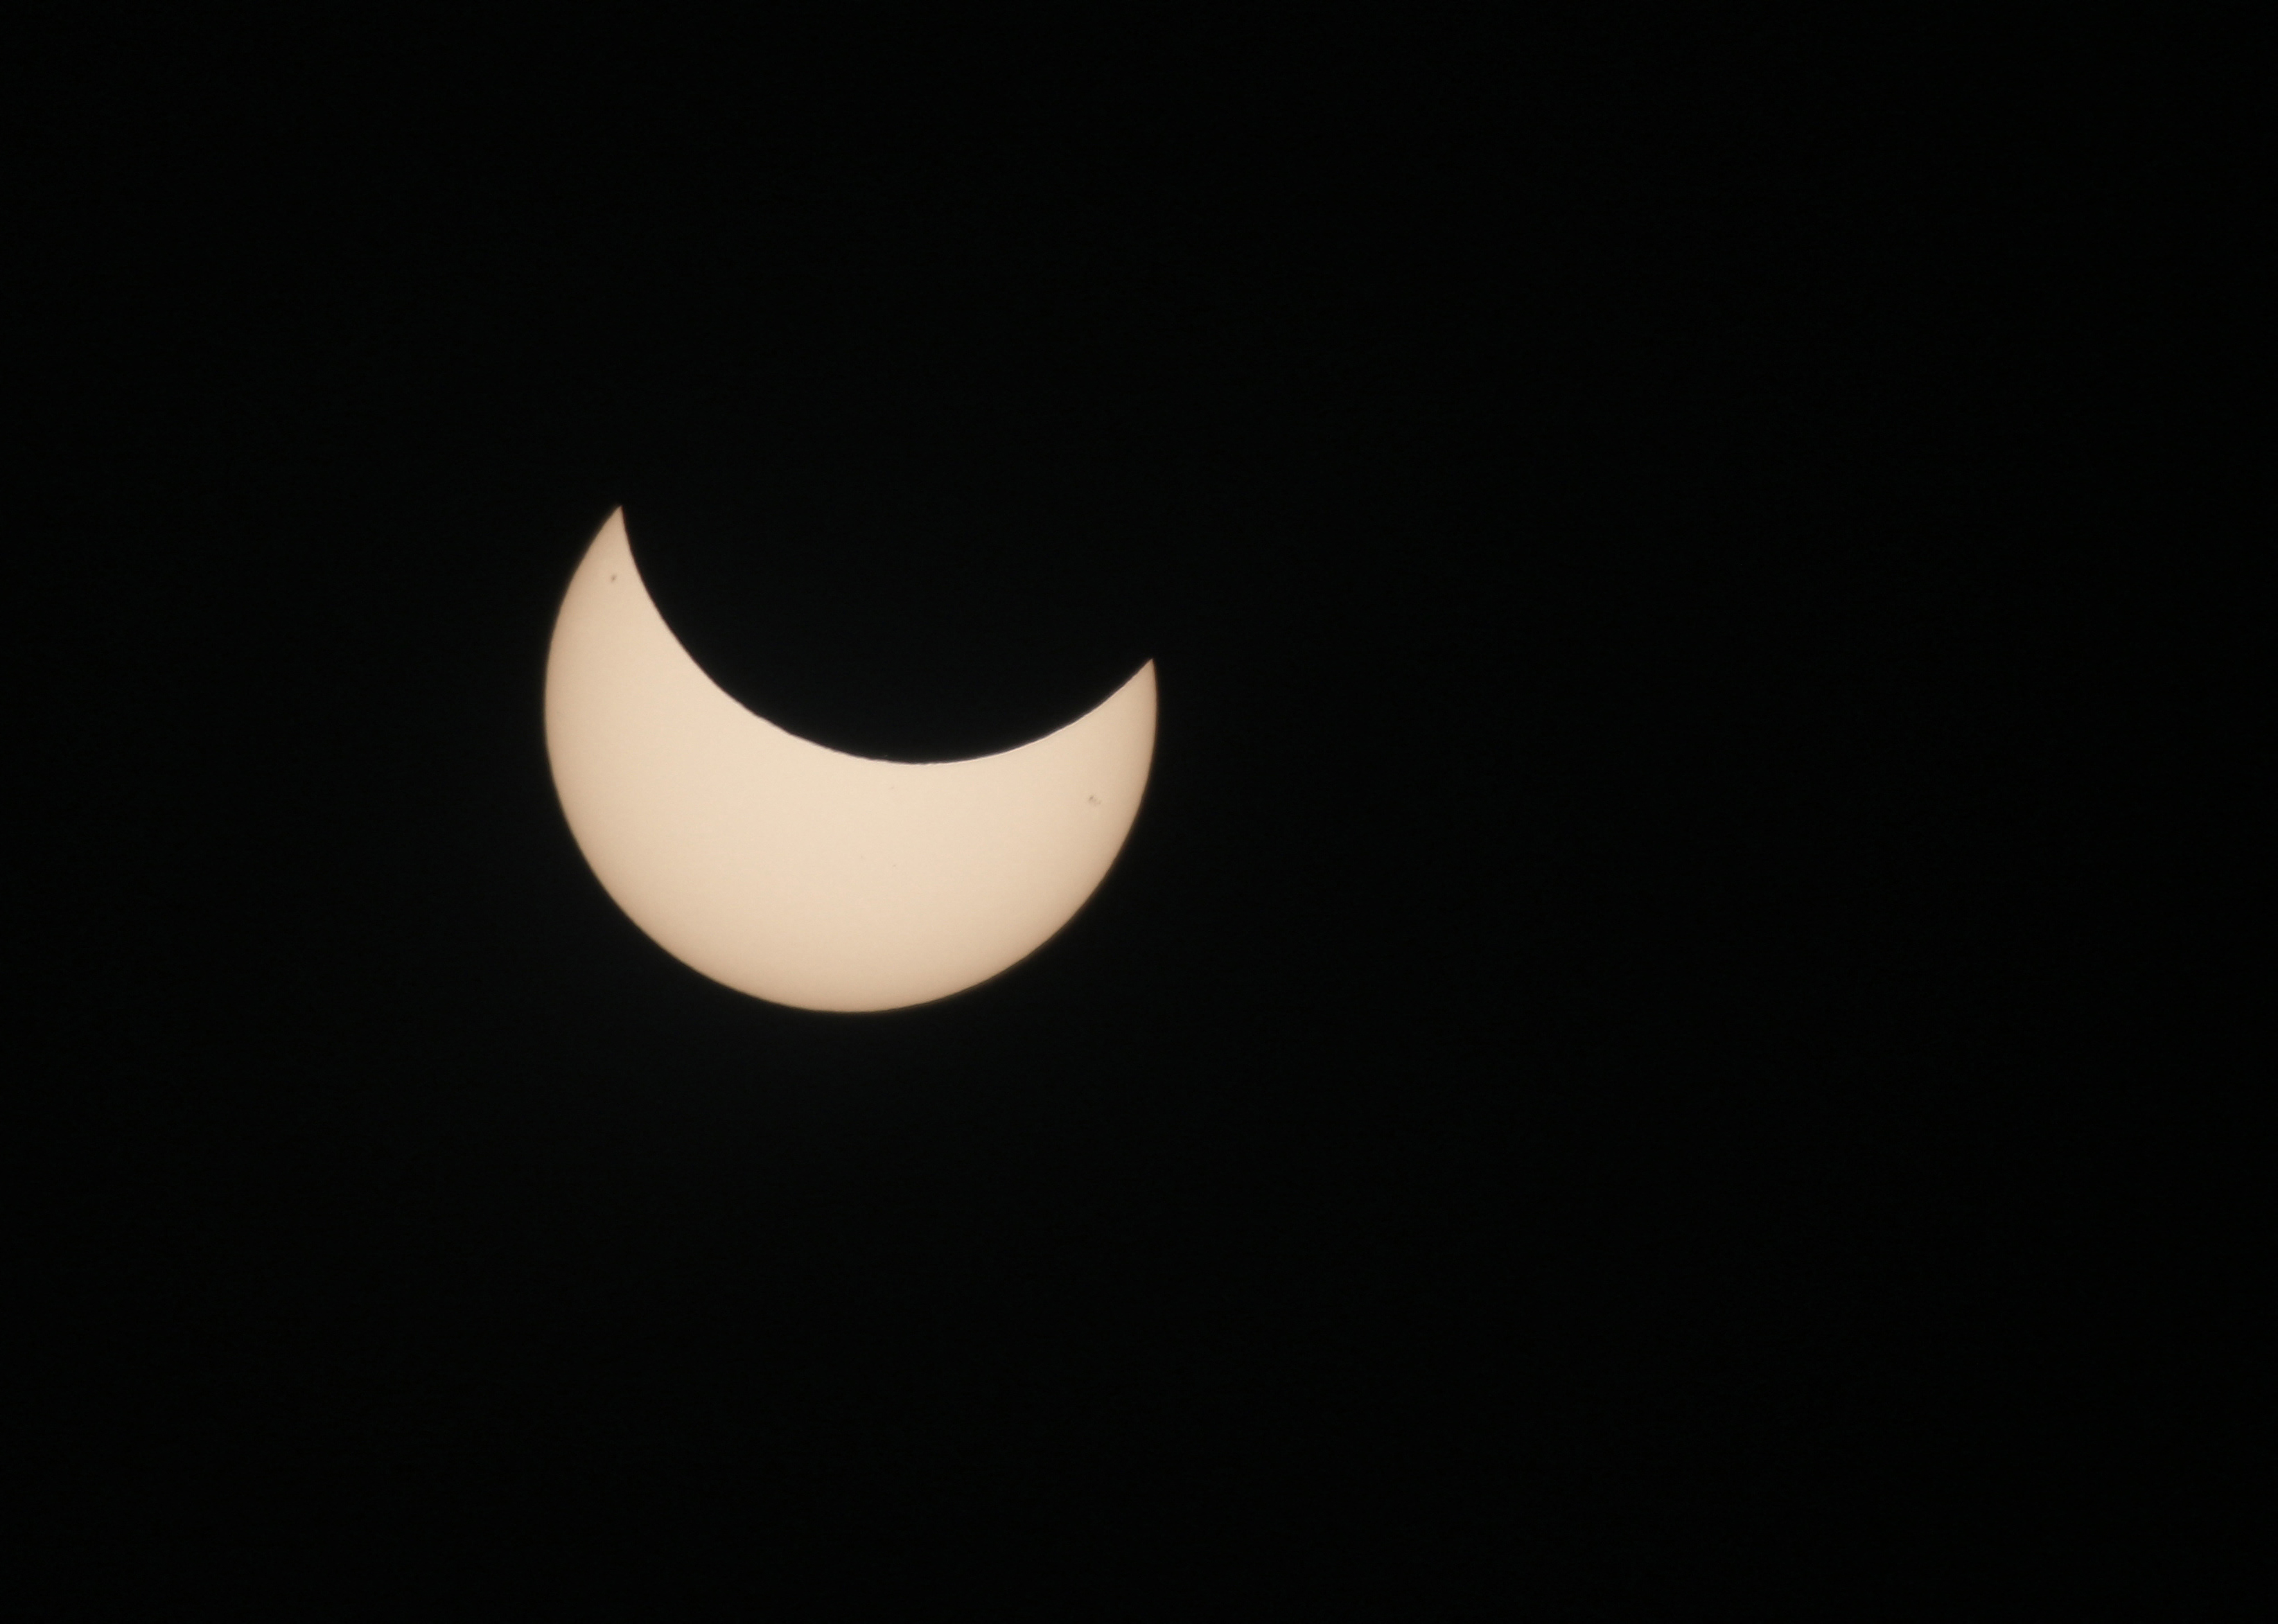 Un eclipse solar parcial visto desde Irak el 25 de octubre de 2022